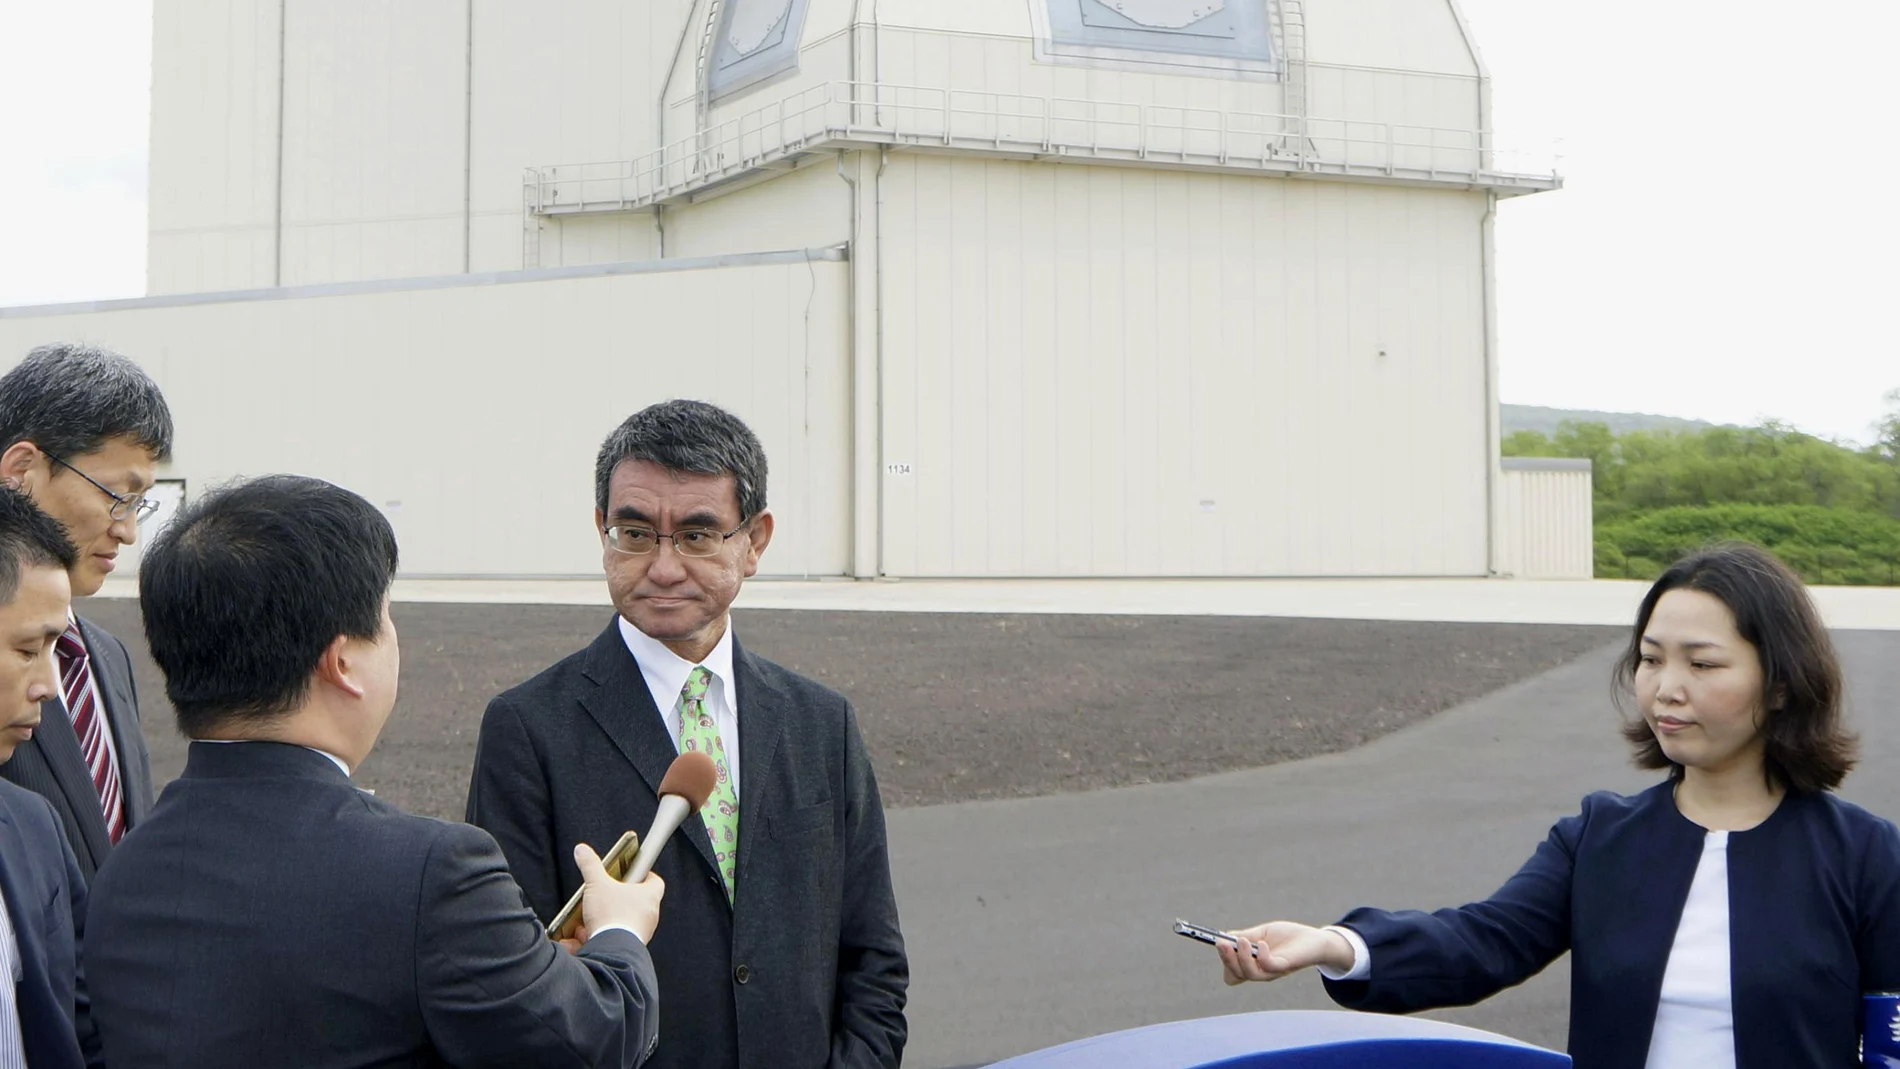 El ministro de Defensa de Japón Taro Kono tras inspeccionar el sistema de defensa aérea estadounidense Aegis Ashore